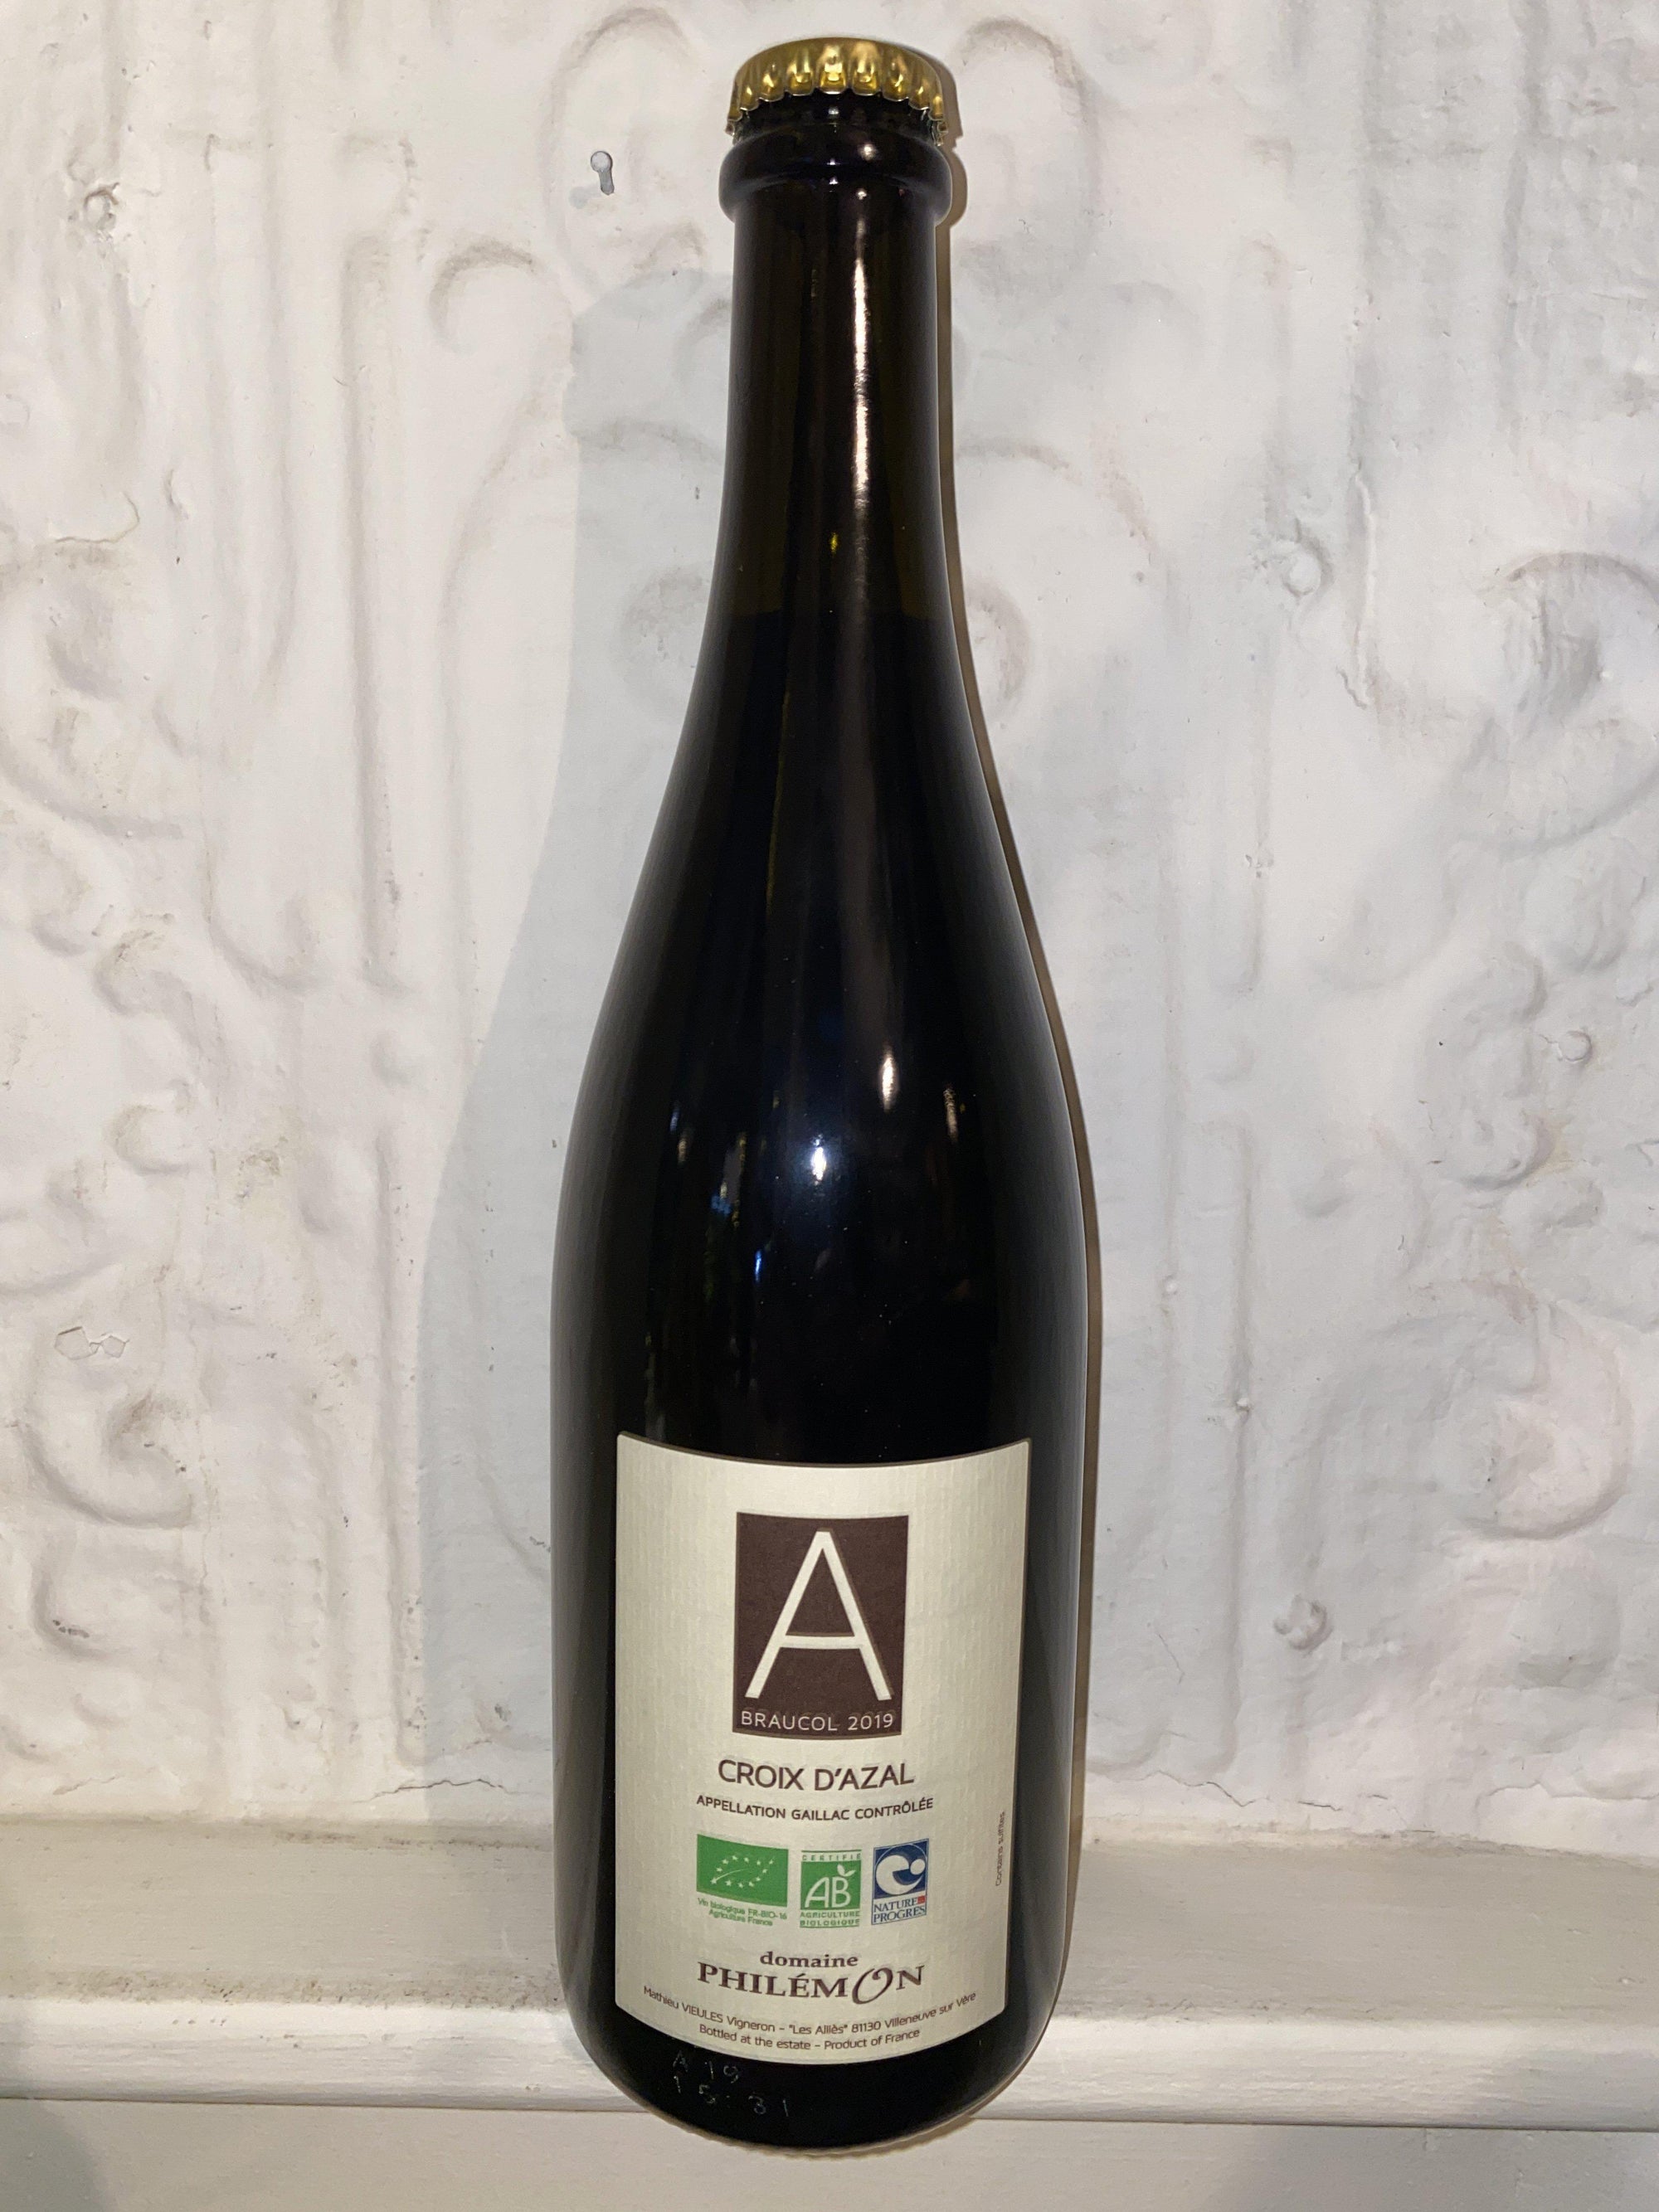 Gaillac Rouge "Croix d'Azal", Domaine Philemon 2019 (Southwest, France)-Wine-Bibber & Bell